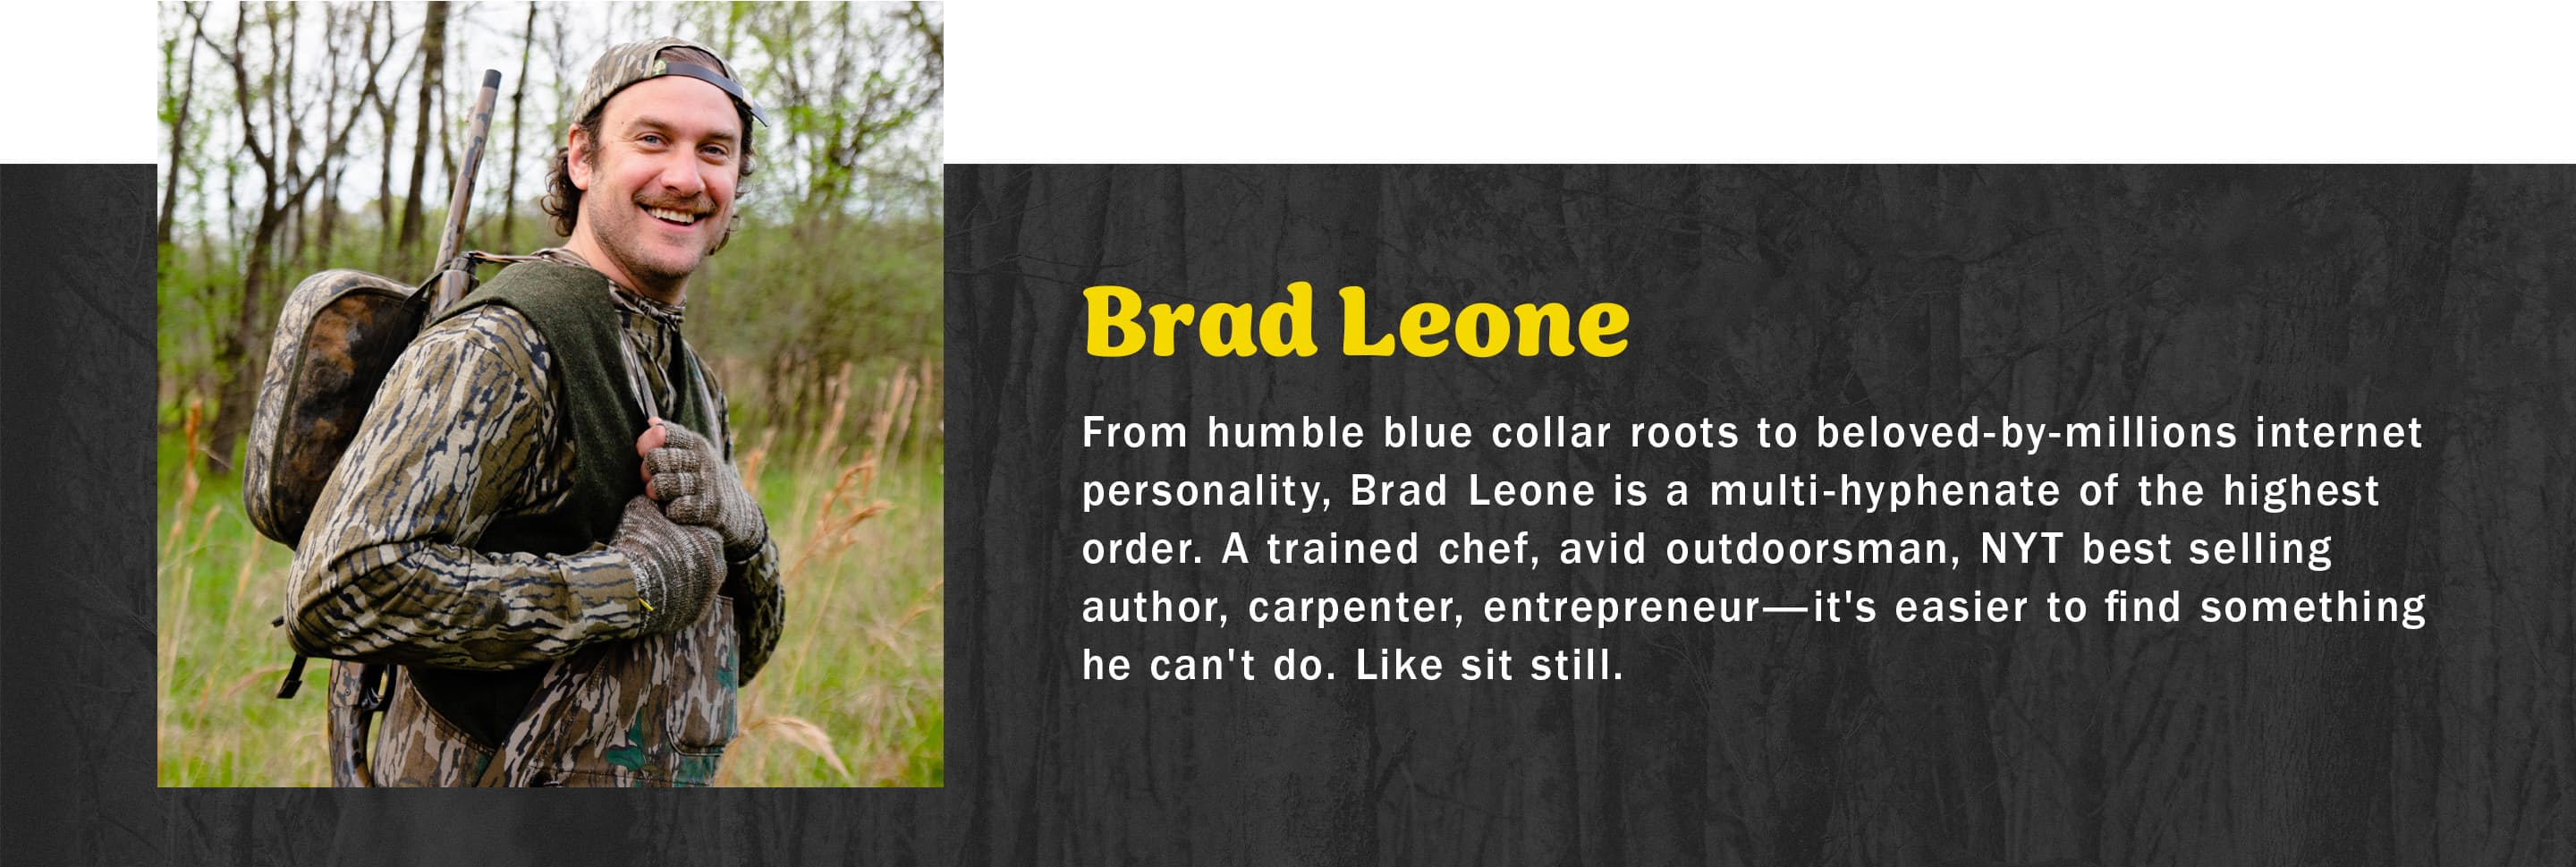 Brad Leone Headshot and Bio